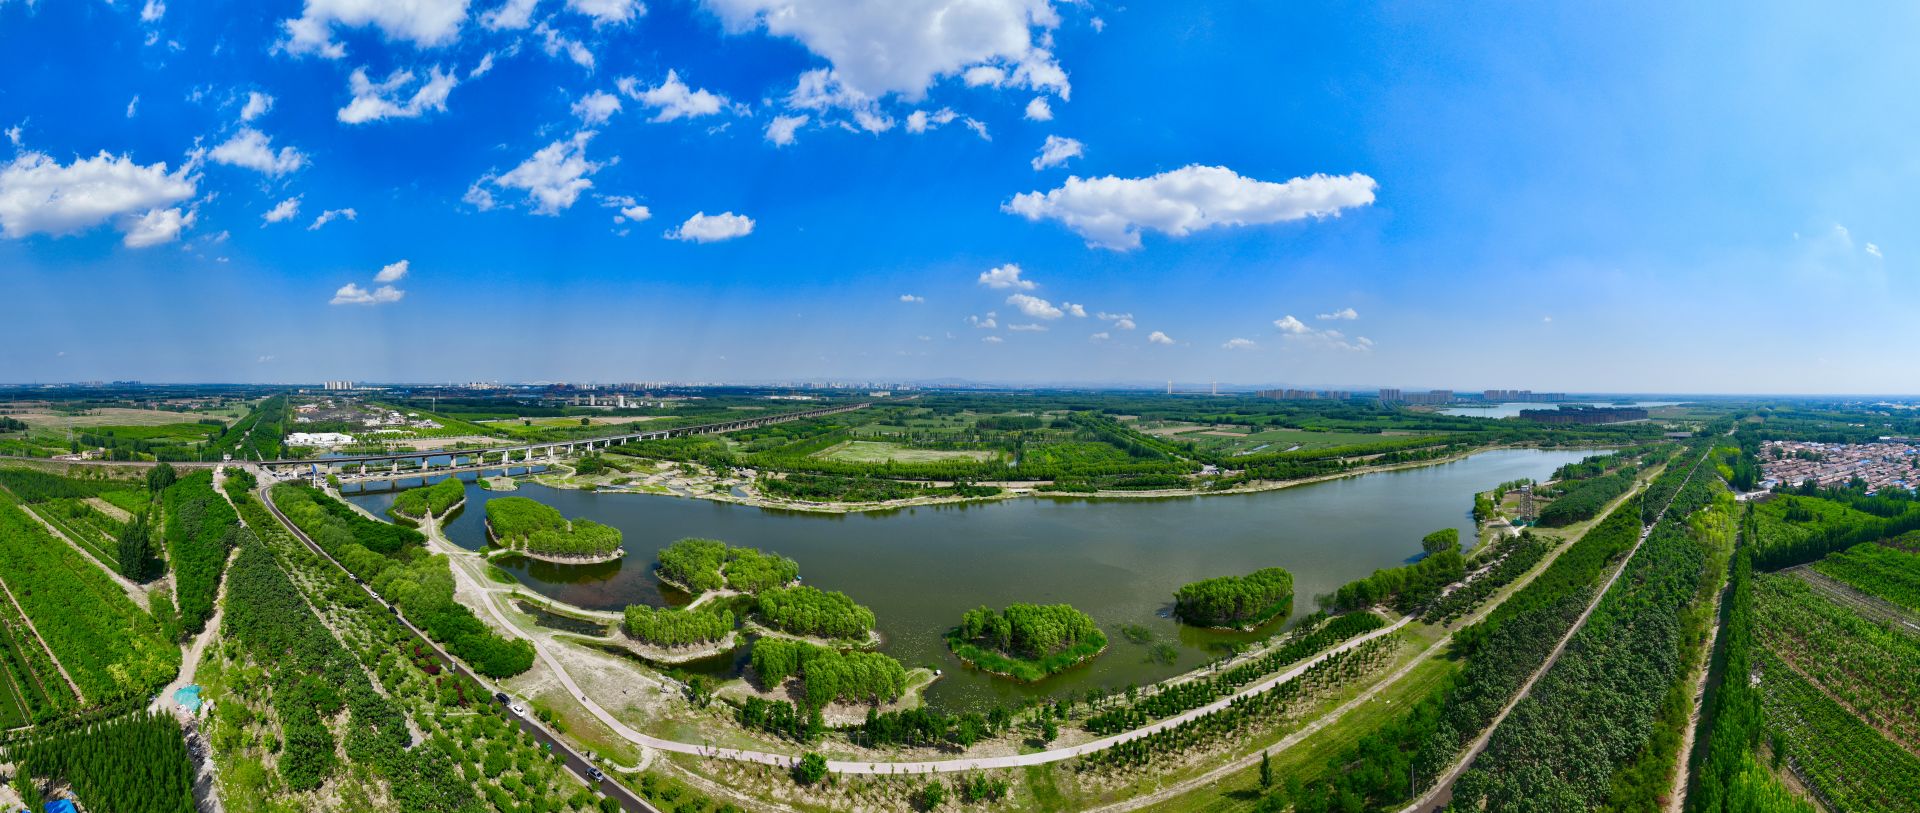 全市首个!齐河黄河国际生态城旅游度假区成功晋升国家级